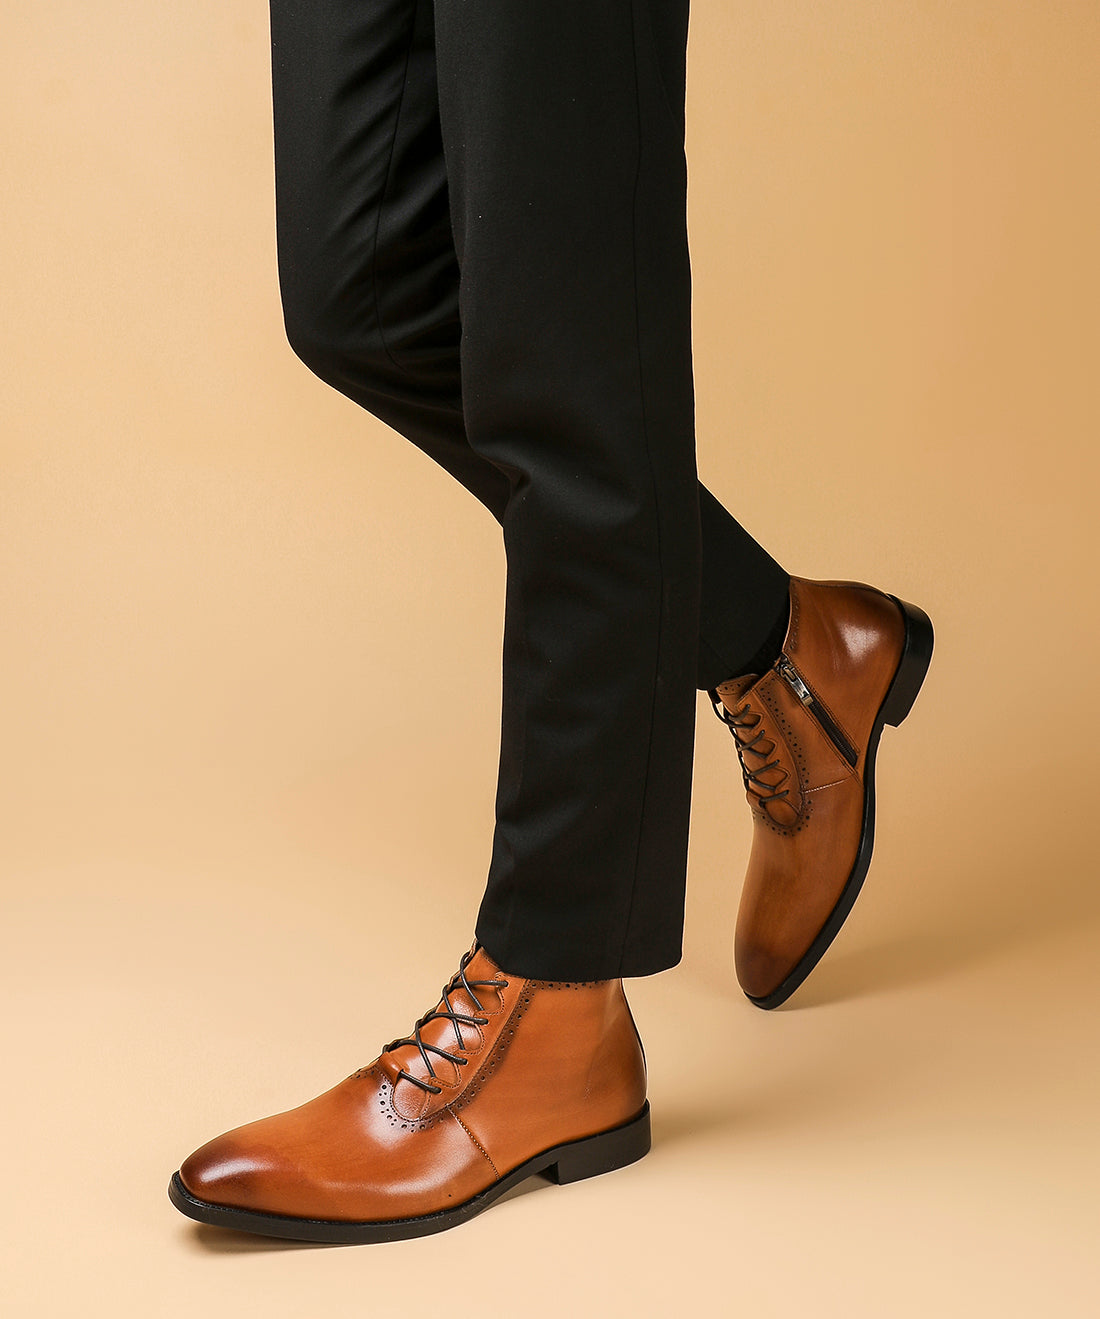 Men's Zipper Formal Dress Boots